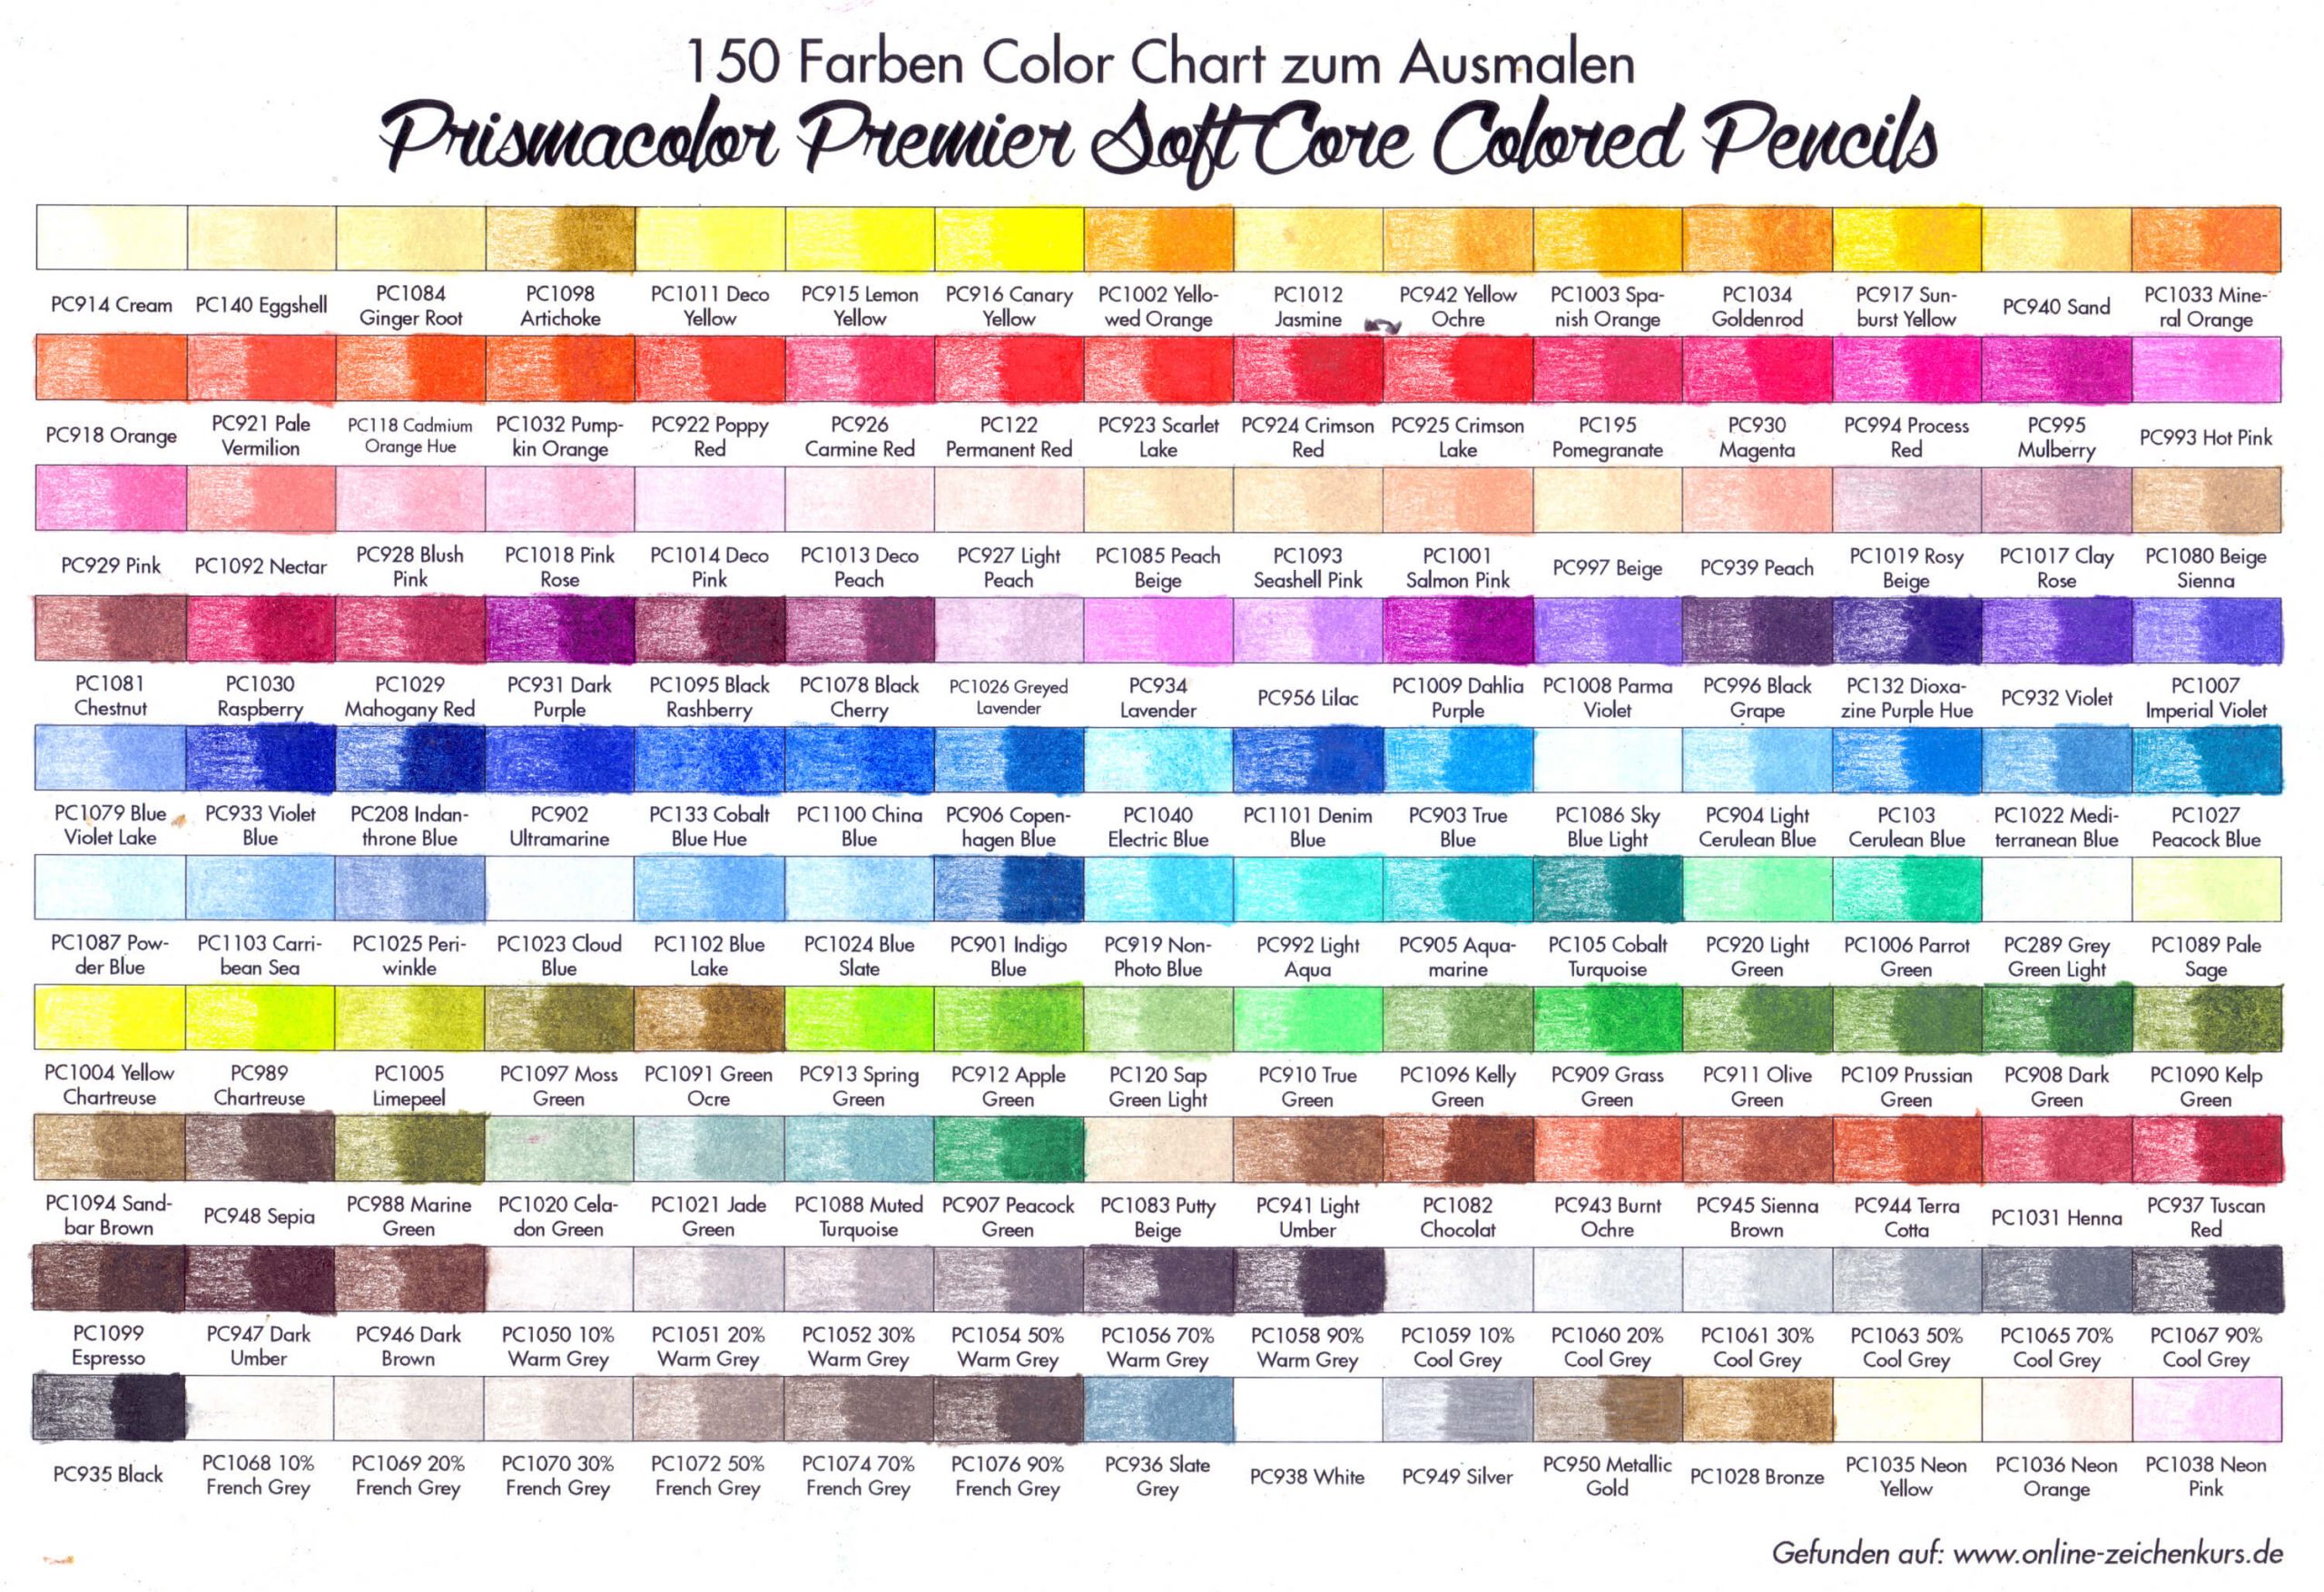 Prismacolor Color Chart ausgemalt alle 150 Farben. 